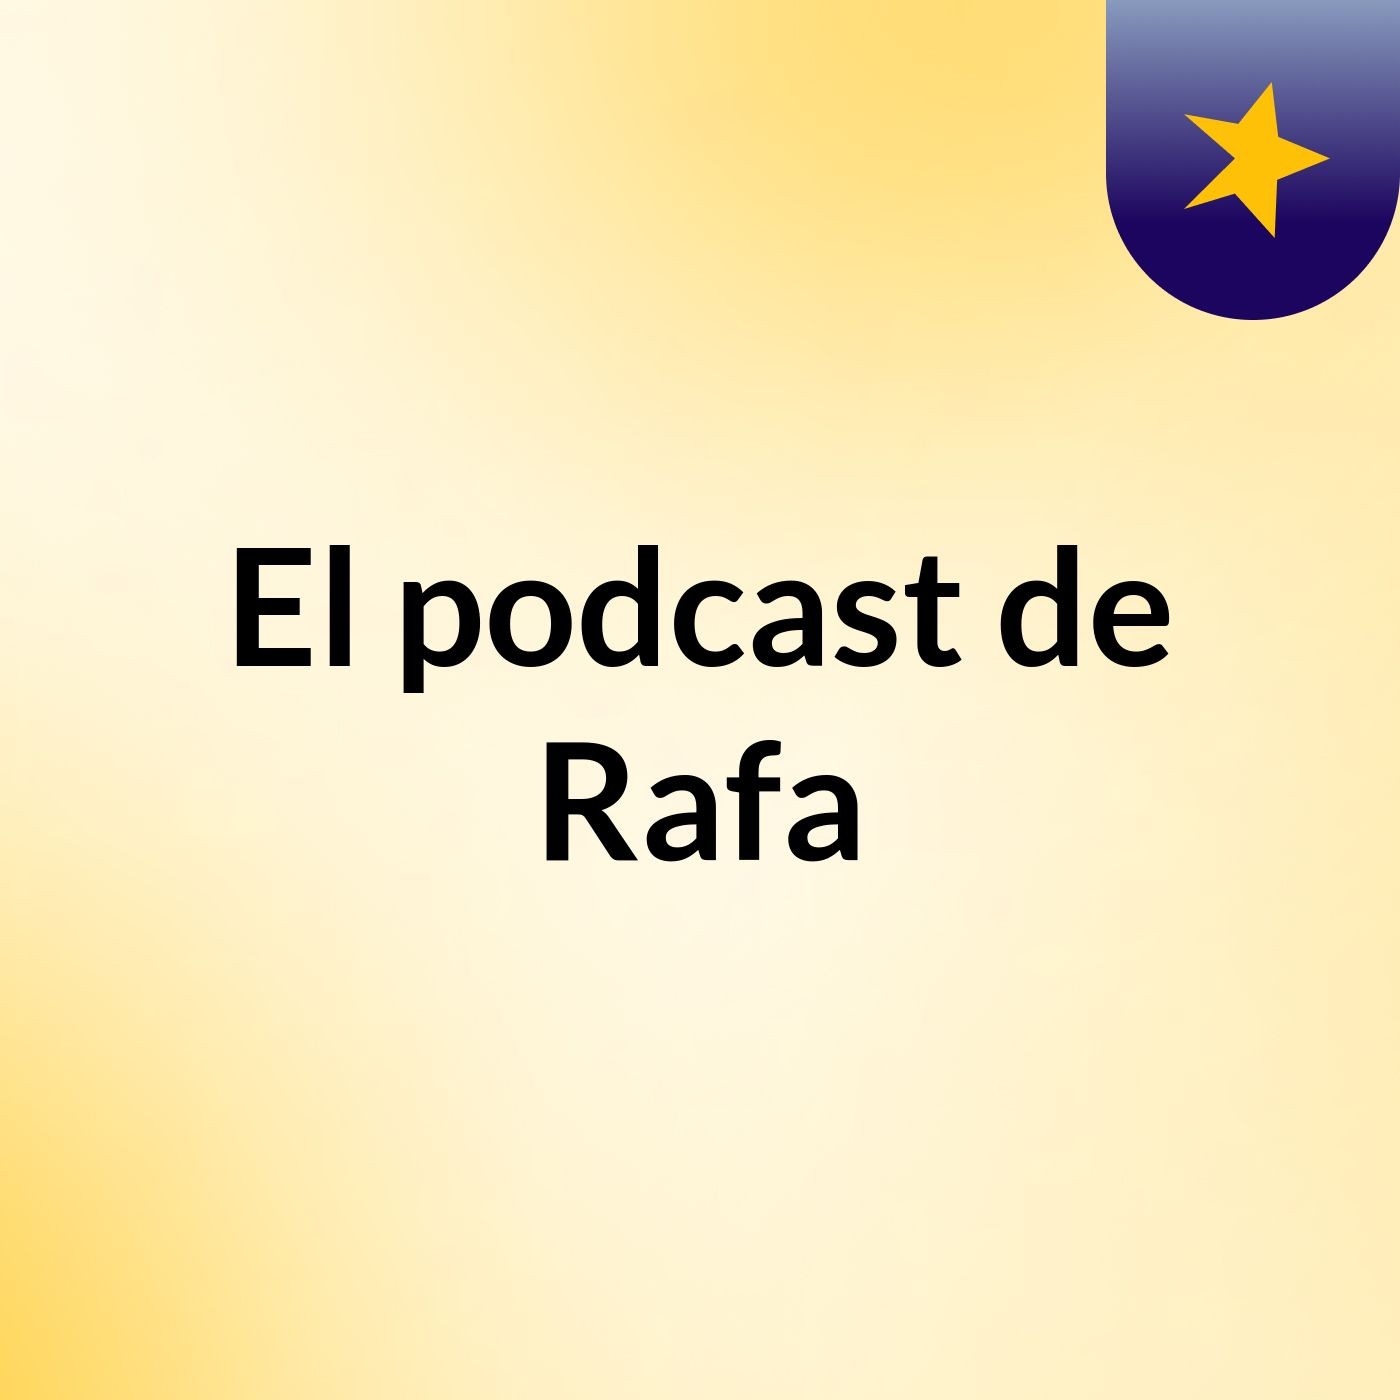 Episodio 2 - El podcast de Rafa